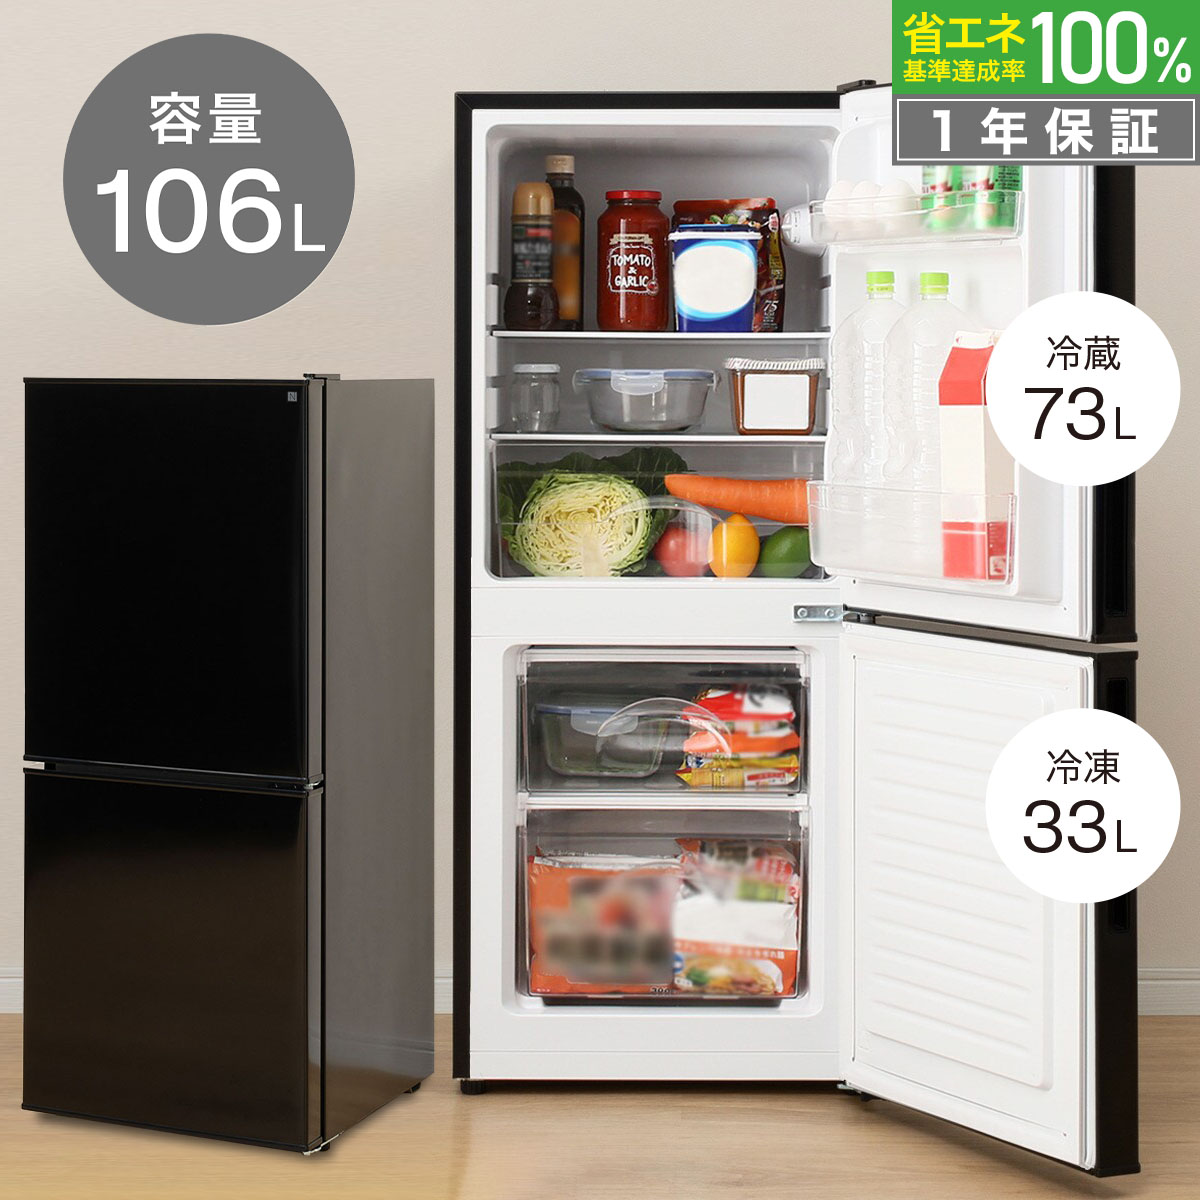 106リットル直冷式2ドア冷蔵庫 Nグラシア BK ニトリ 【玄関先迄納品】 【1年保証】 | ニトリ